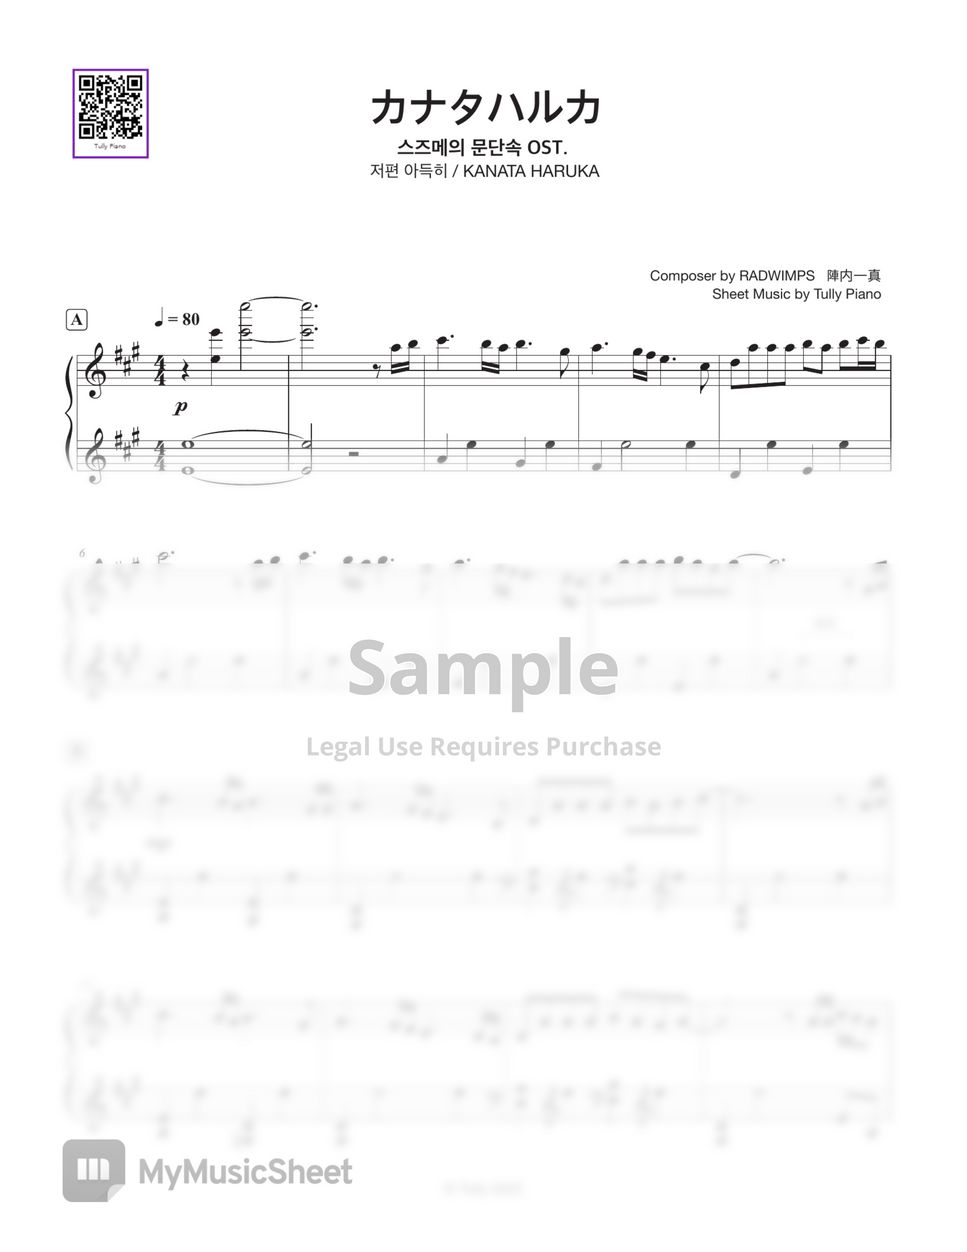 Suzume no Tojimari OST - KANATA HARUKA (Full & Short ver.) by Tully Piano